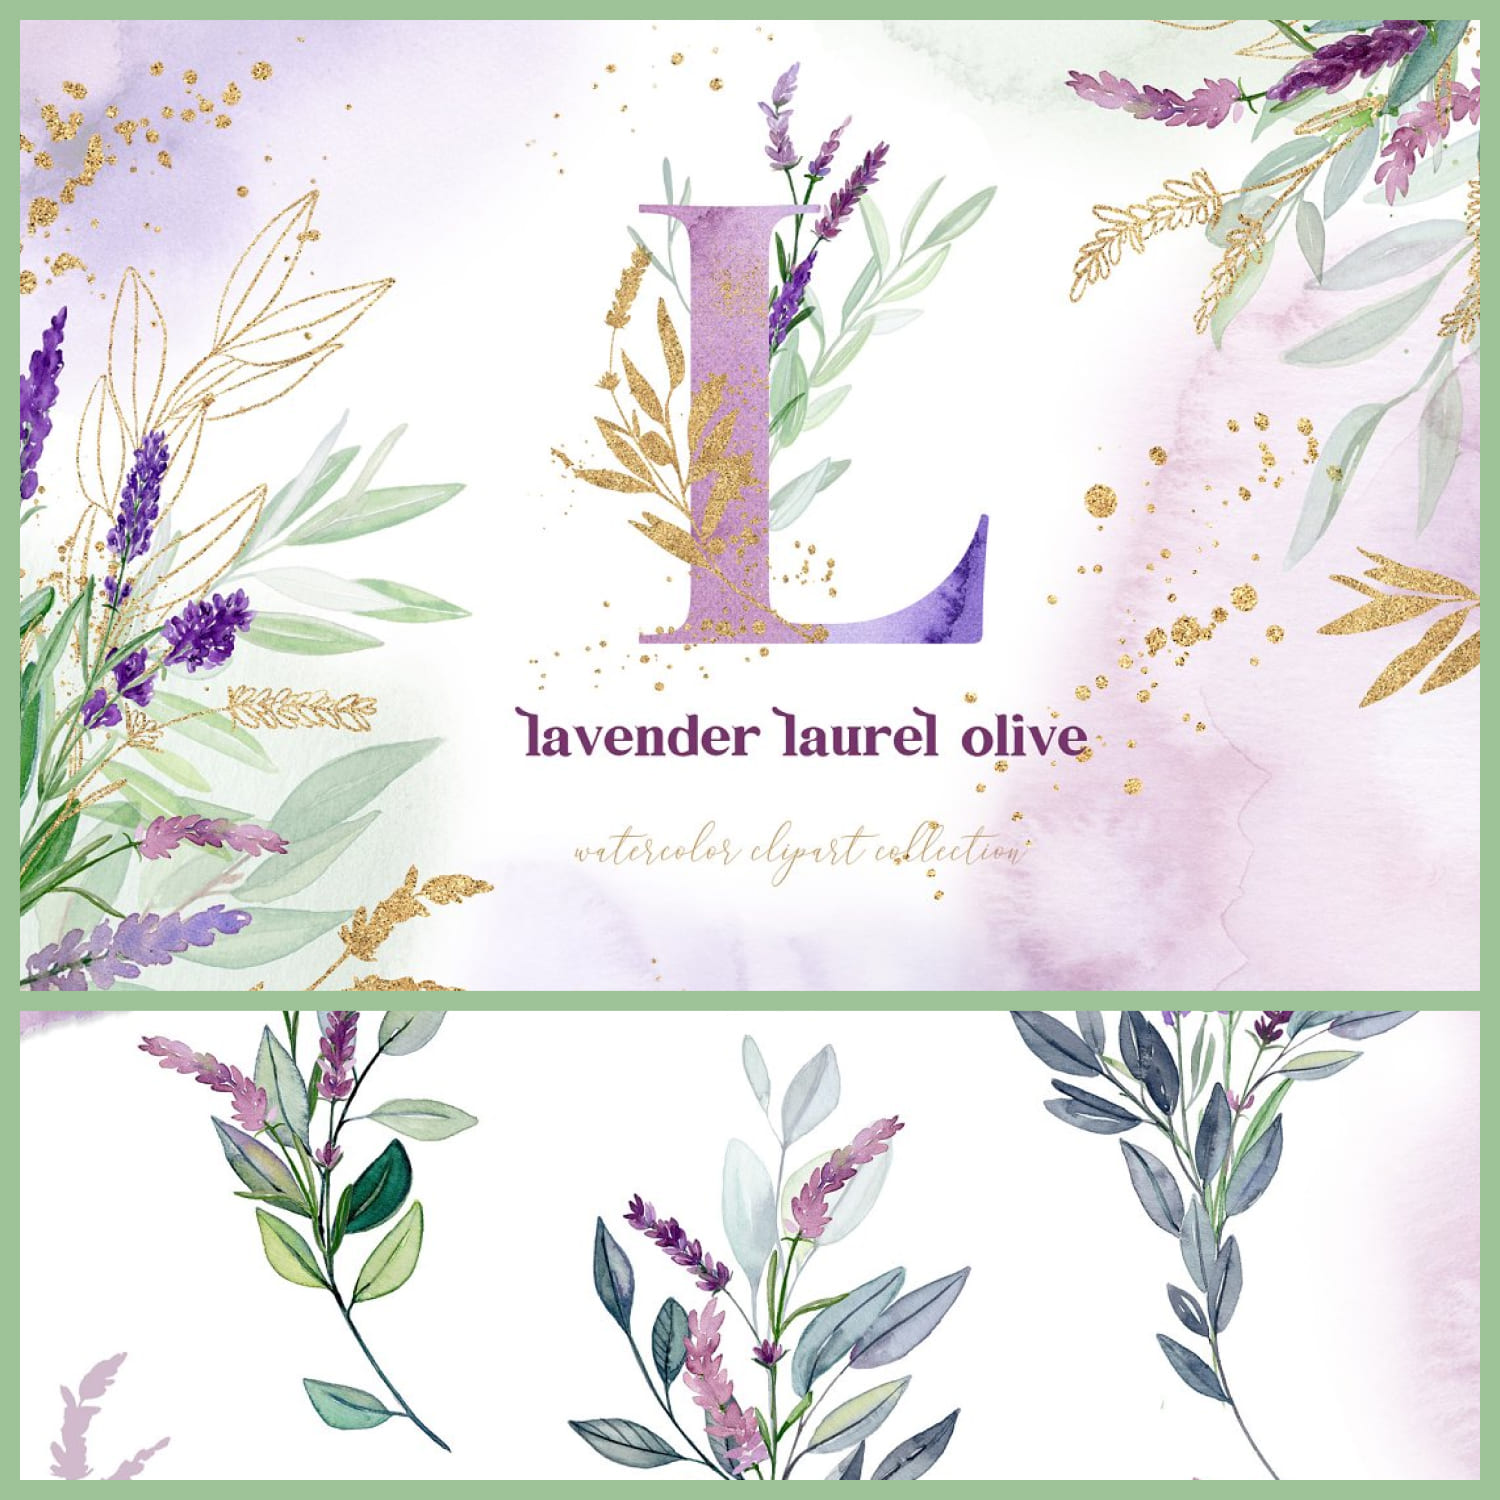 Sale Lavender Laurel Olive Flowers cover image.